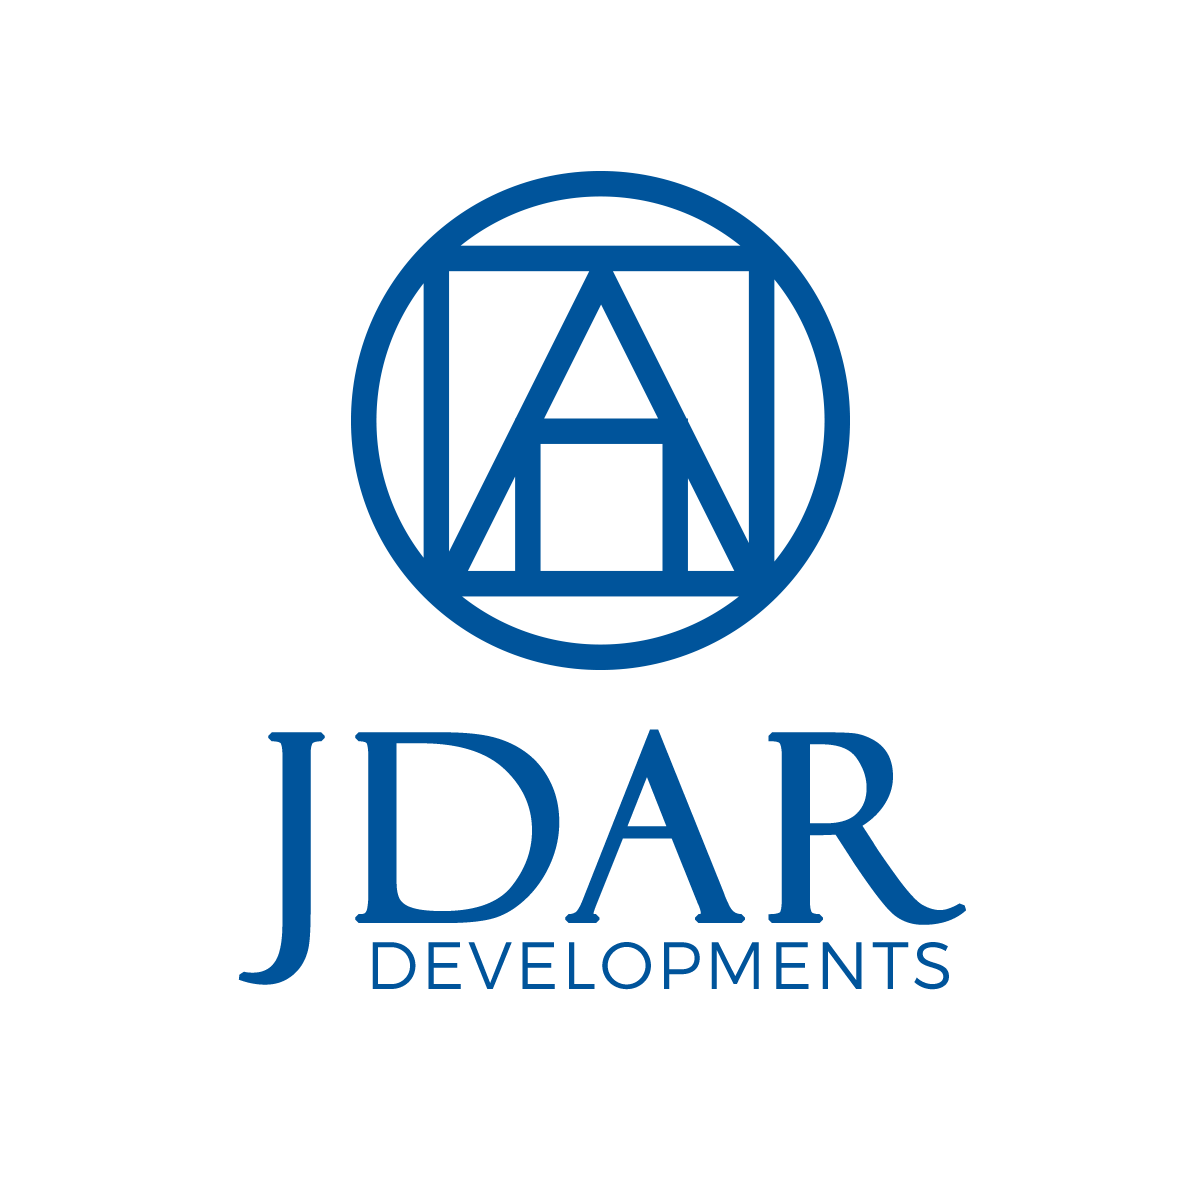 JDAR Development